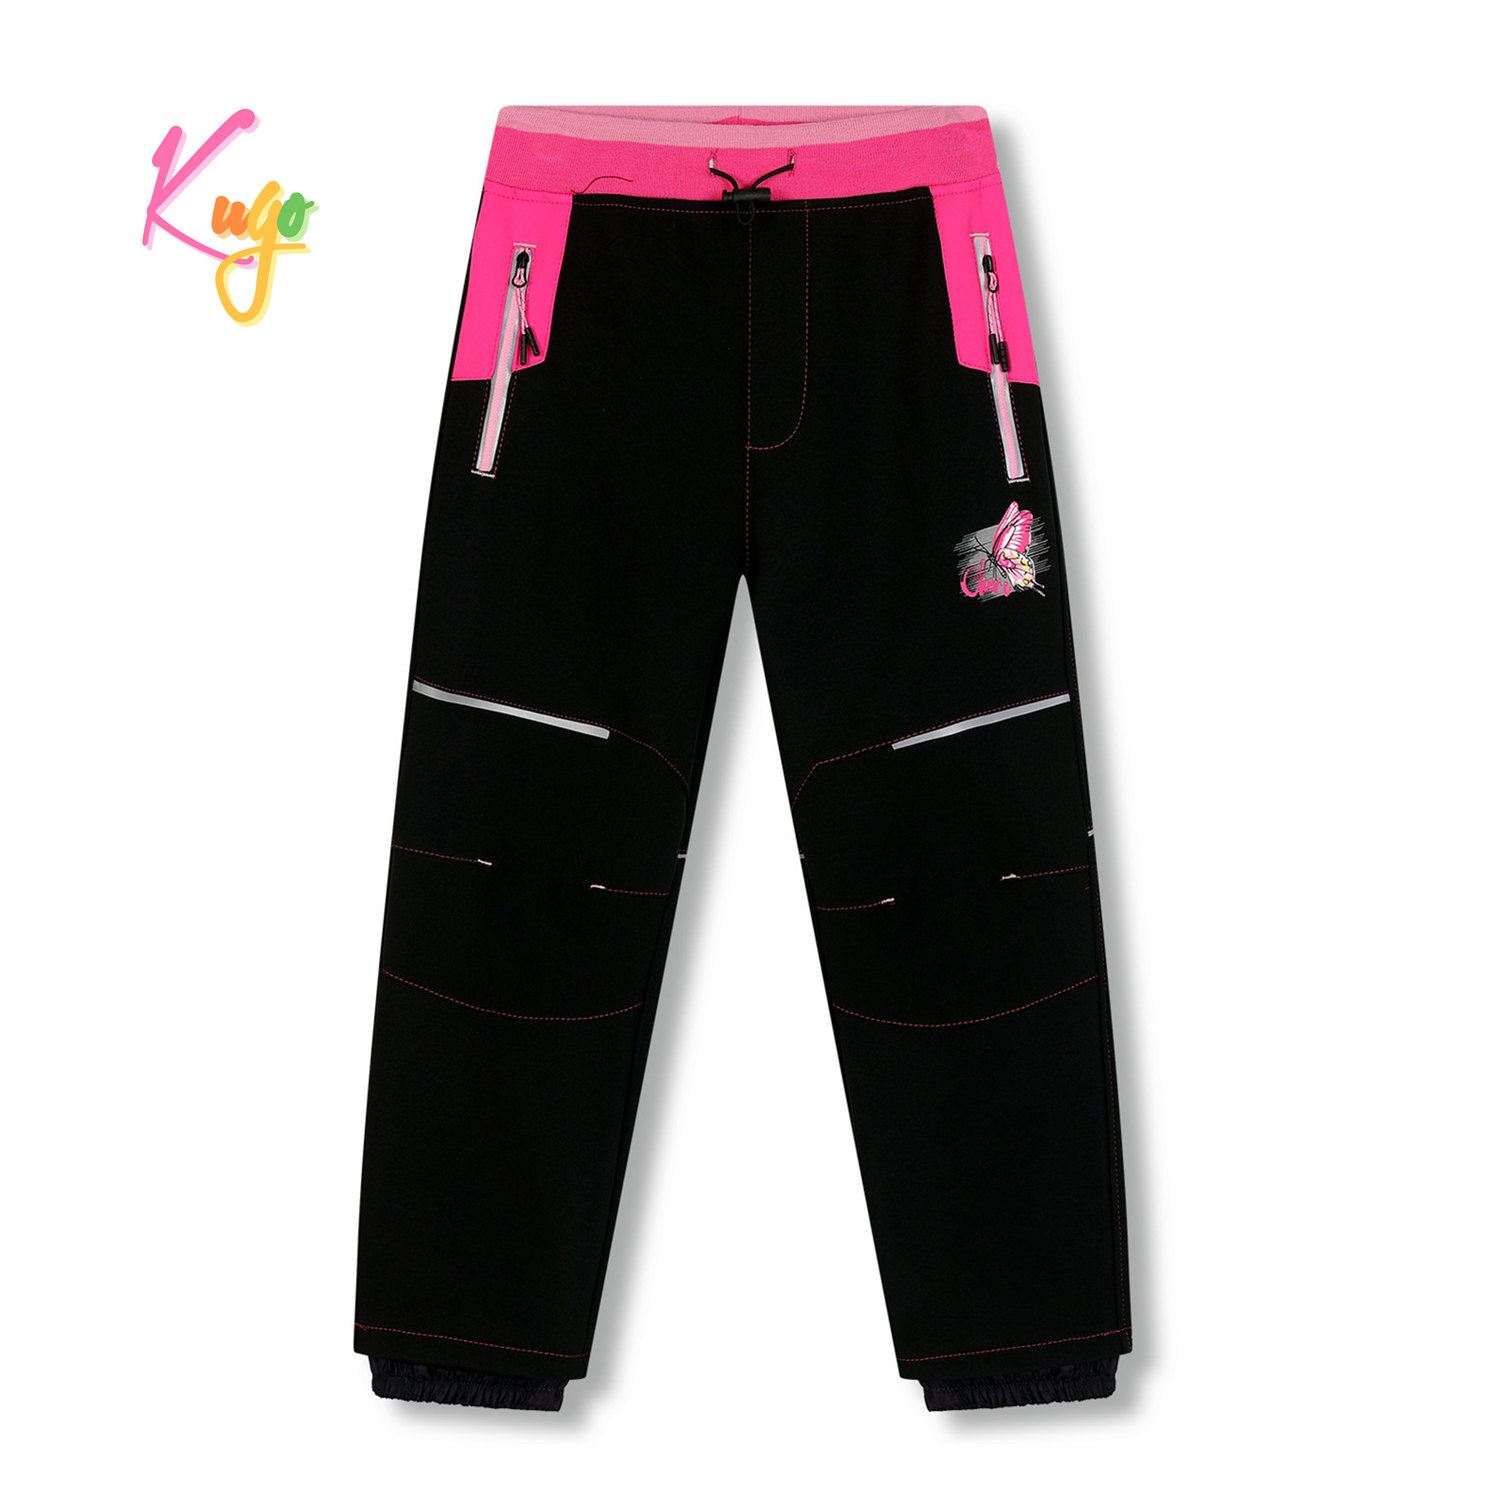 Dívčí softshellové kalhoty, zateplené - KUGO HK5612, černá / růžový pas Barva: Černá, Velikost: 104